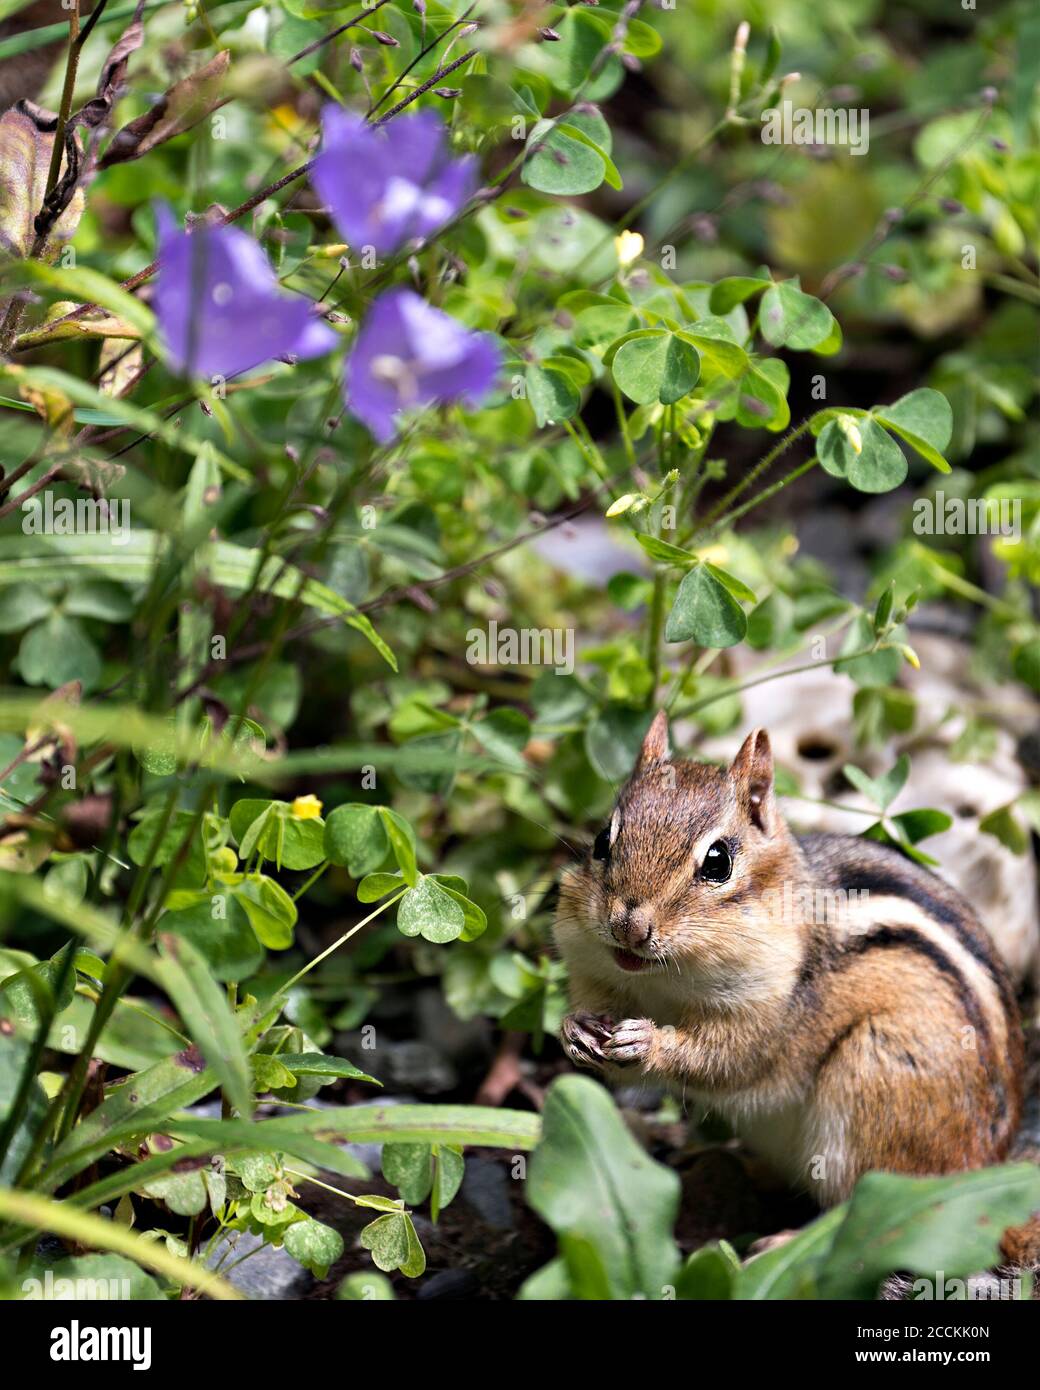 Chipmunk Nahaufnahme Profil Ansicht in seiner Umgebung und Lebensraum mit Wildblumen und Laub Hintergrund und Vordergrund Blick auf die Kamera. Bild. Bild. Stockfoto